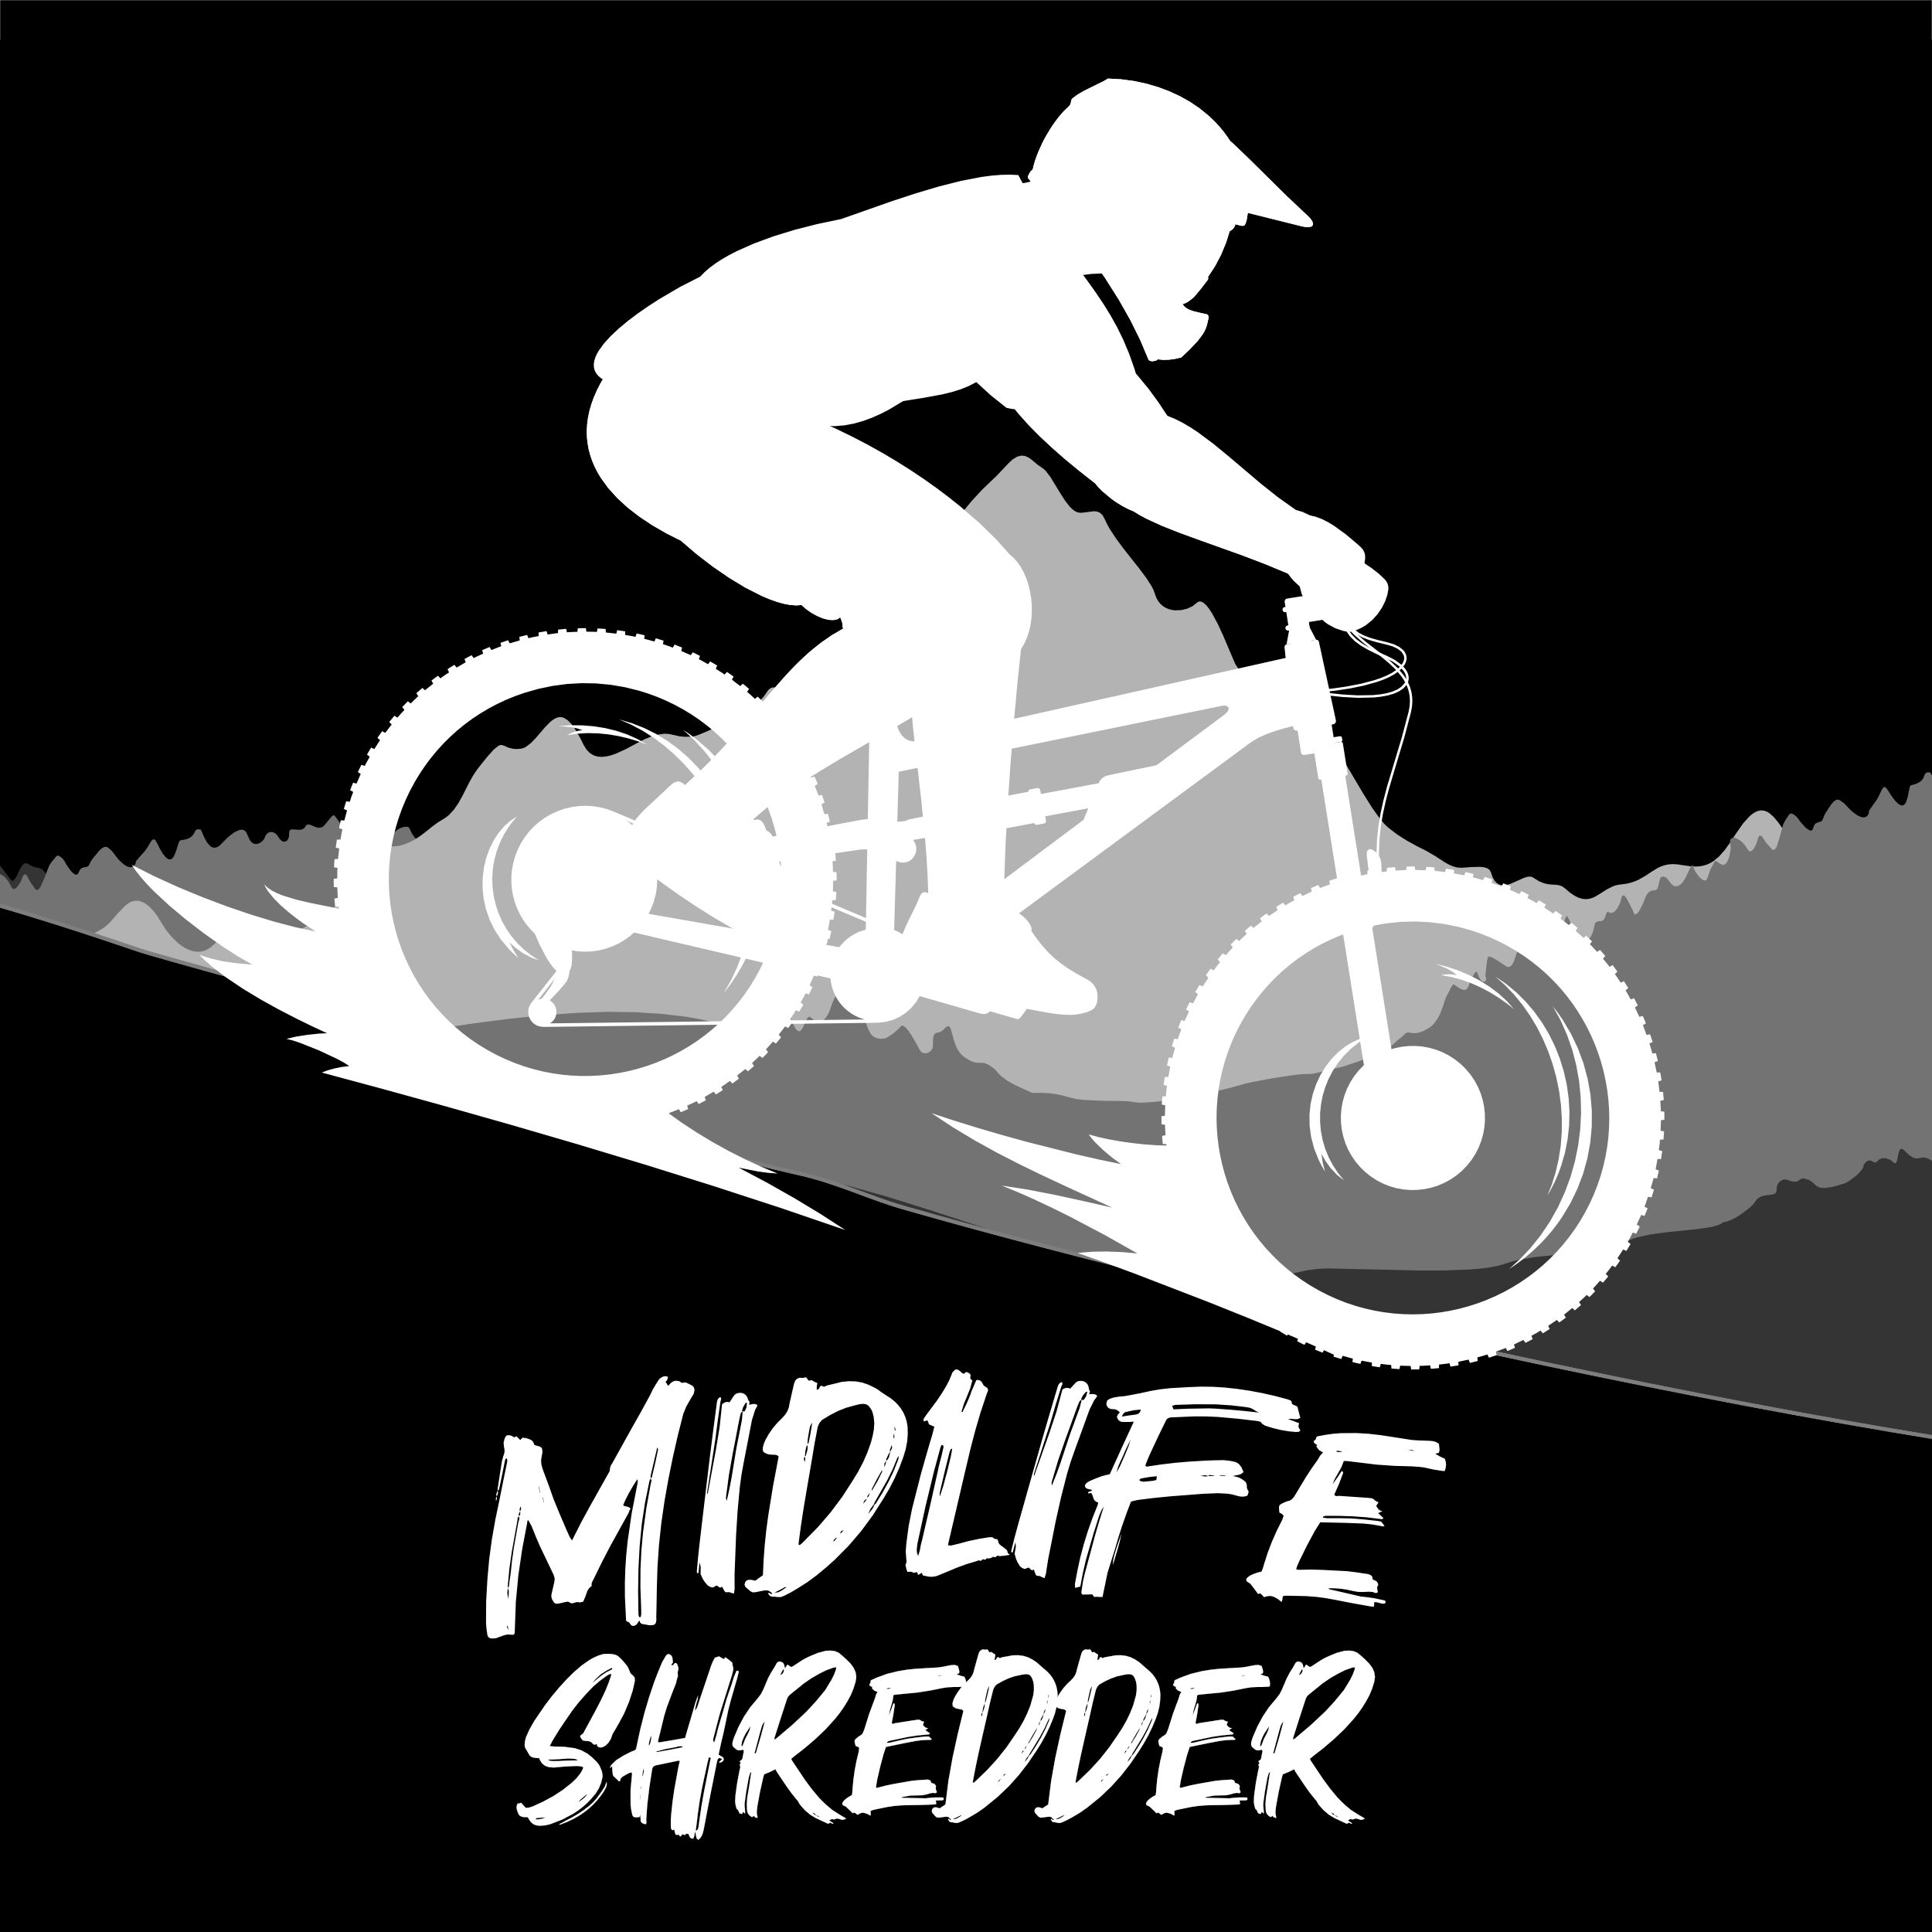 Midlife Shredder logo